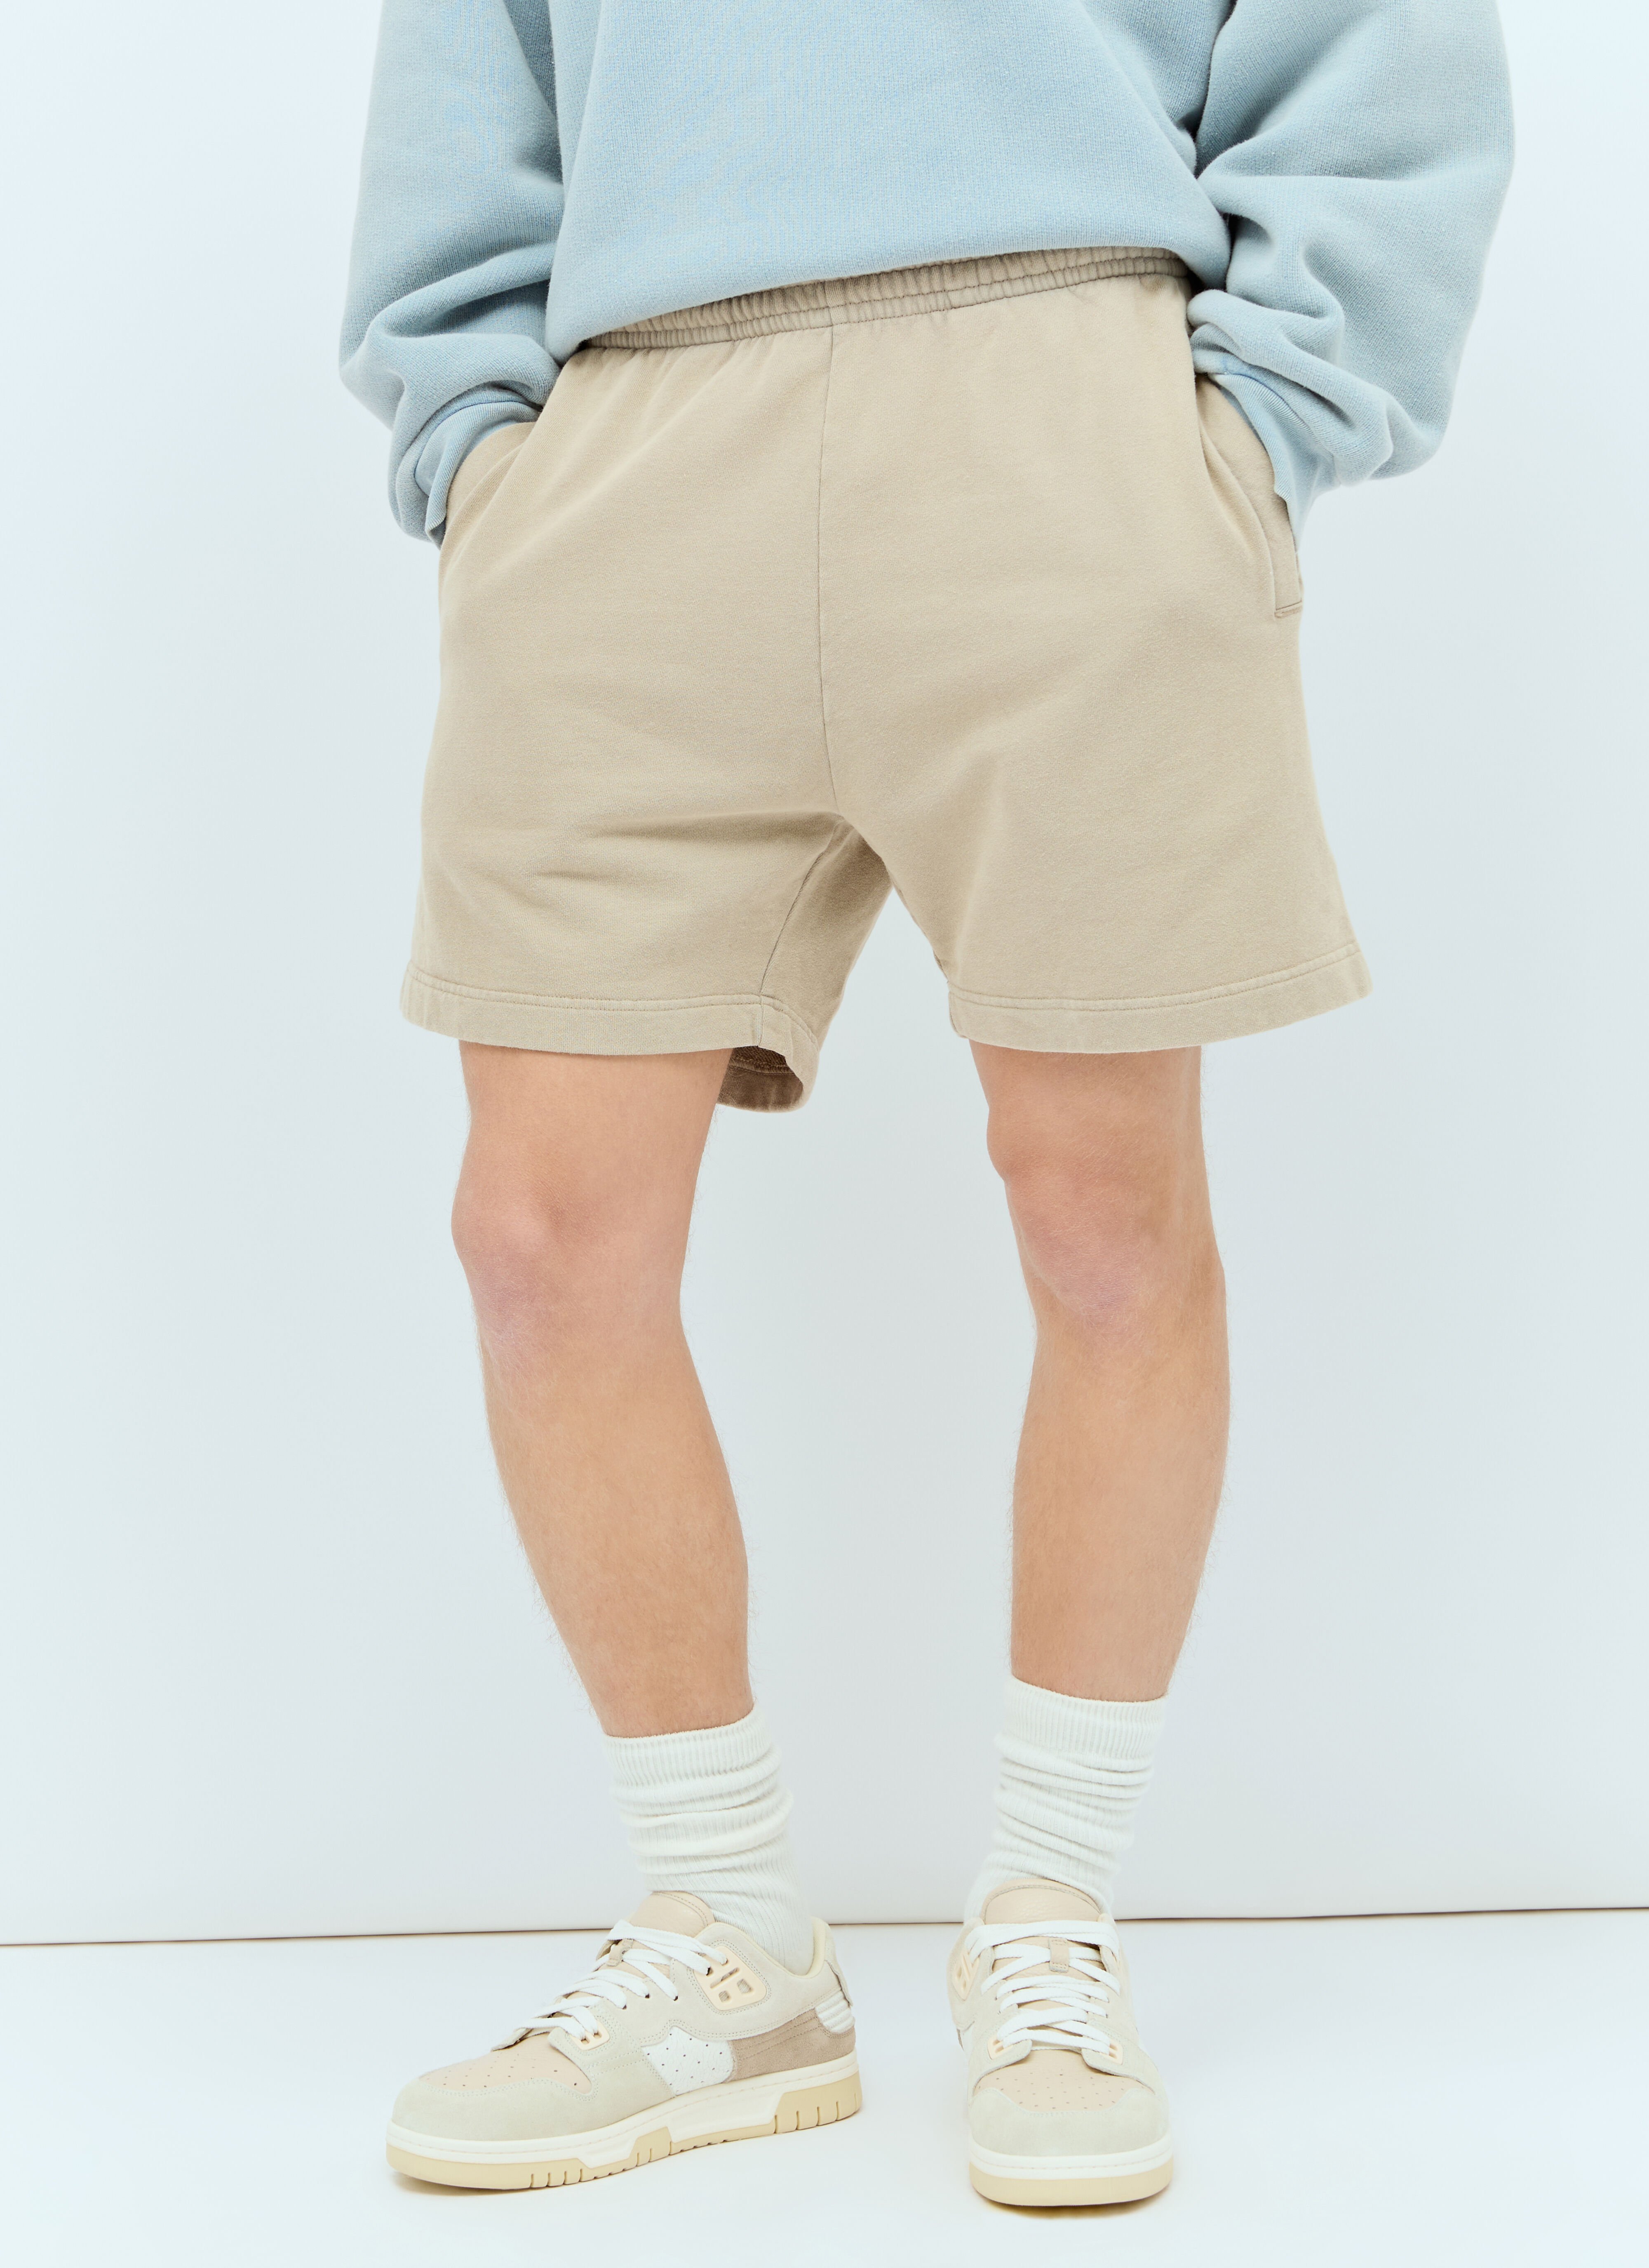 Boiler Room Cotton Fleece Shorts Grey bor0156008